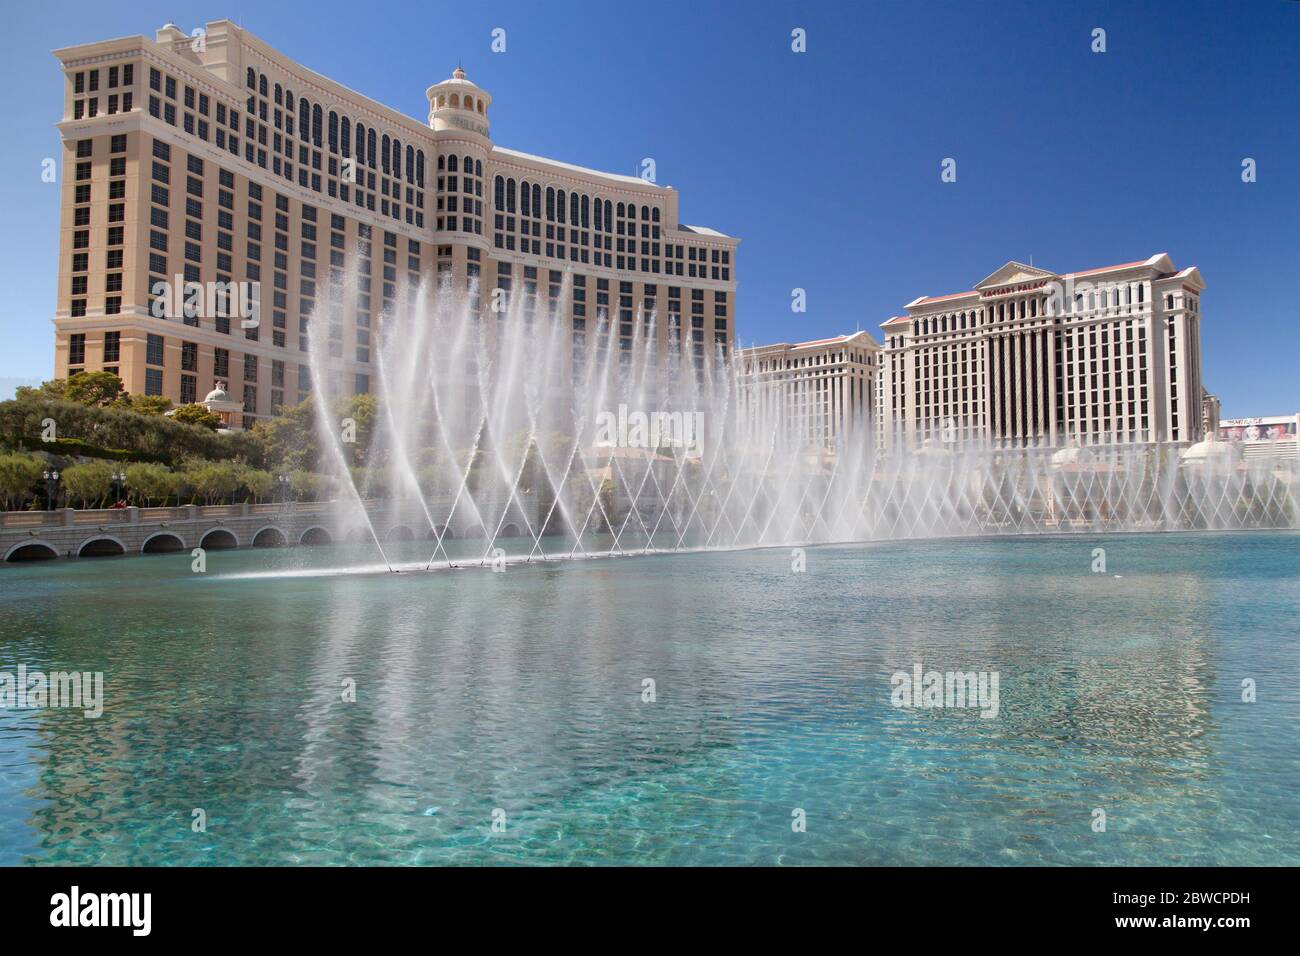 Las Vegas, Nevada - 30. August 2019: Das Bellagio und der nahe gelegene Caesars Palace, mit den Springbrunnen des Bellagio im Vordergrund, Las Vegas, Nevada, Einheit Stockfoto